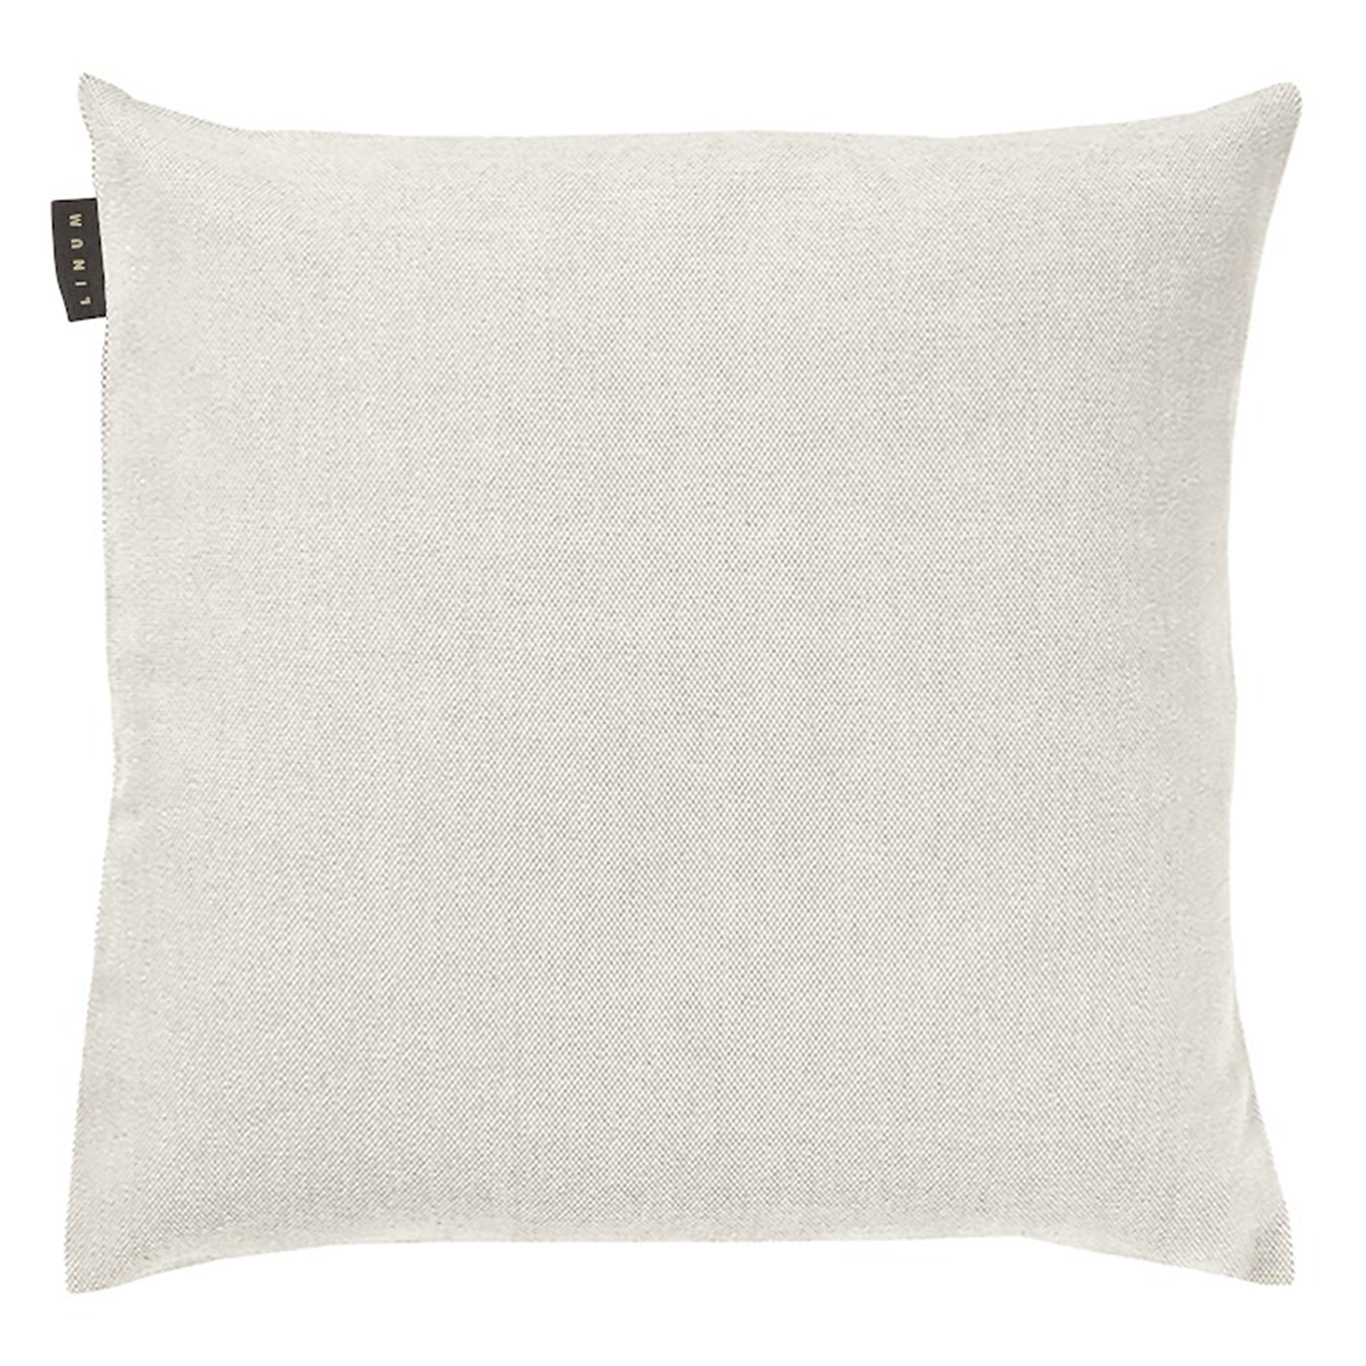 Pepper Cushion Cover 50x50 cm, White